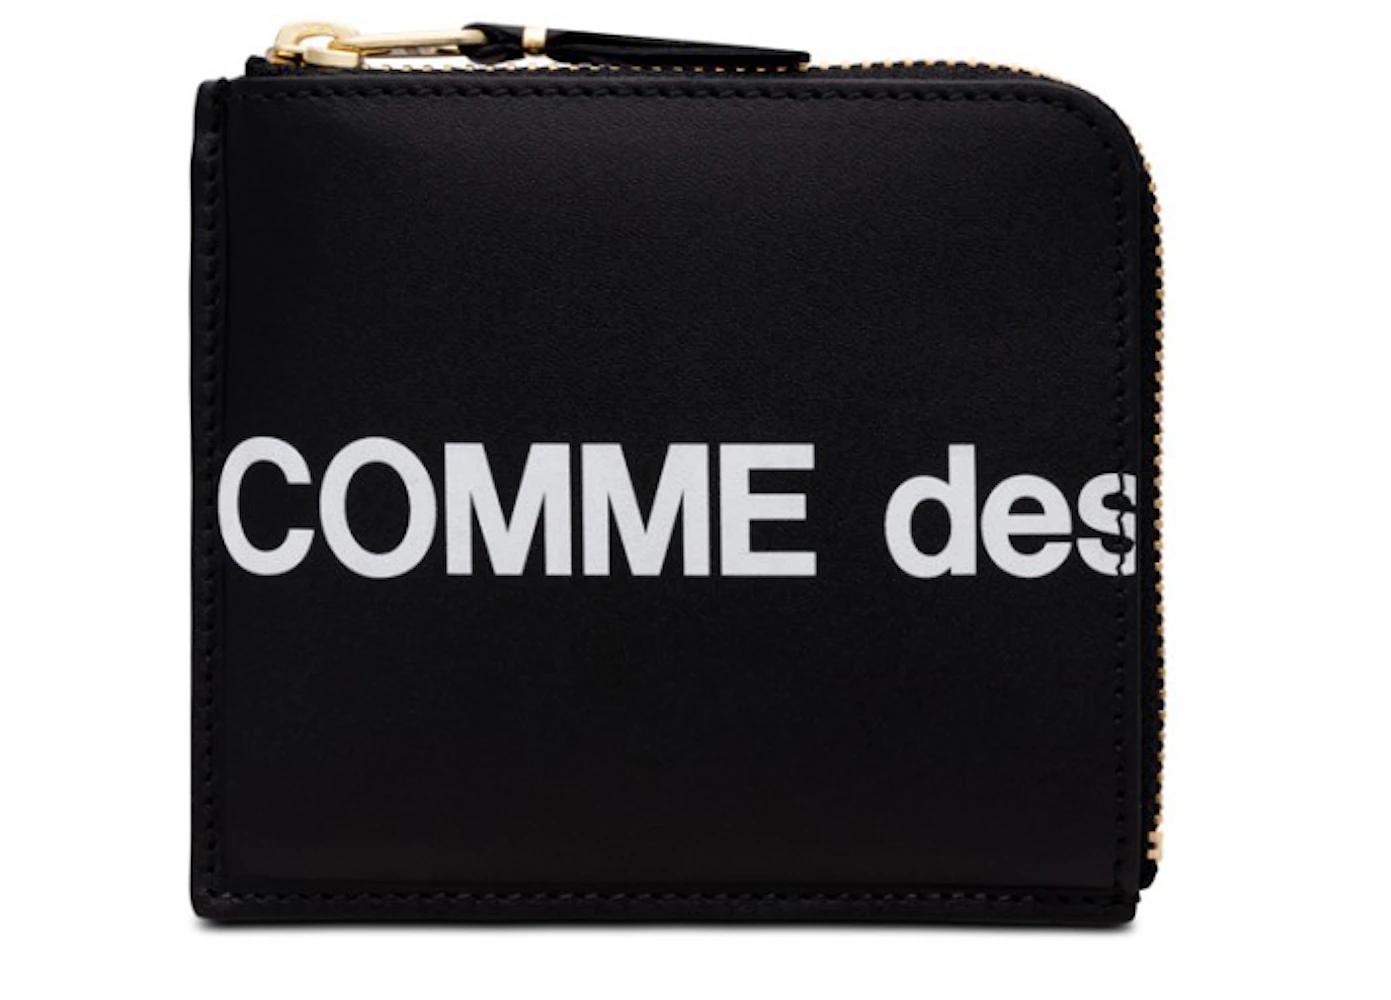 Comme des Garcons SA3100HL Huge Logo Wallet Black in Leather with Gold ...